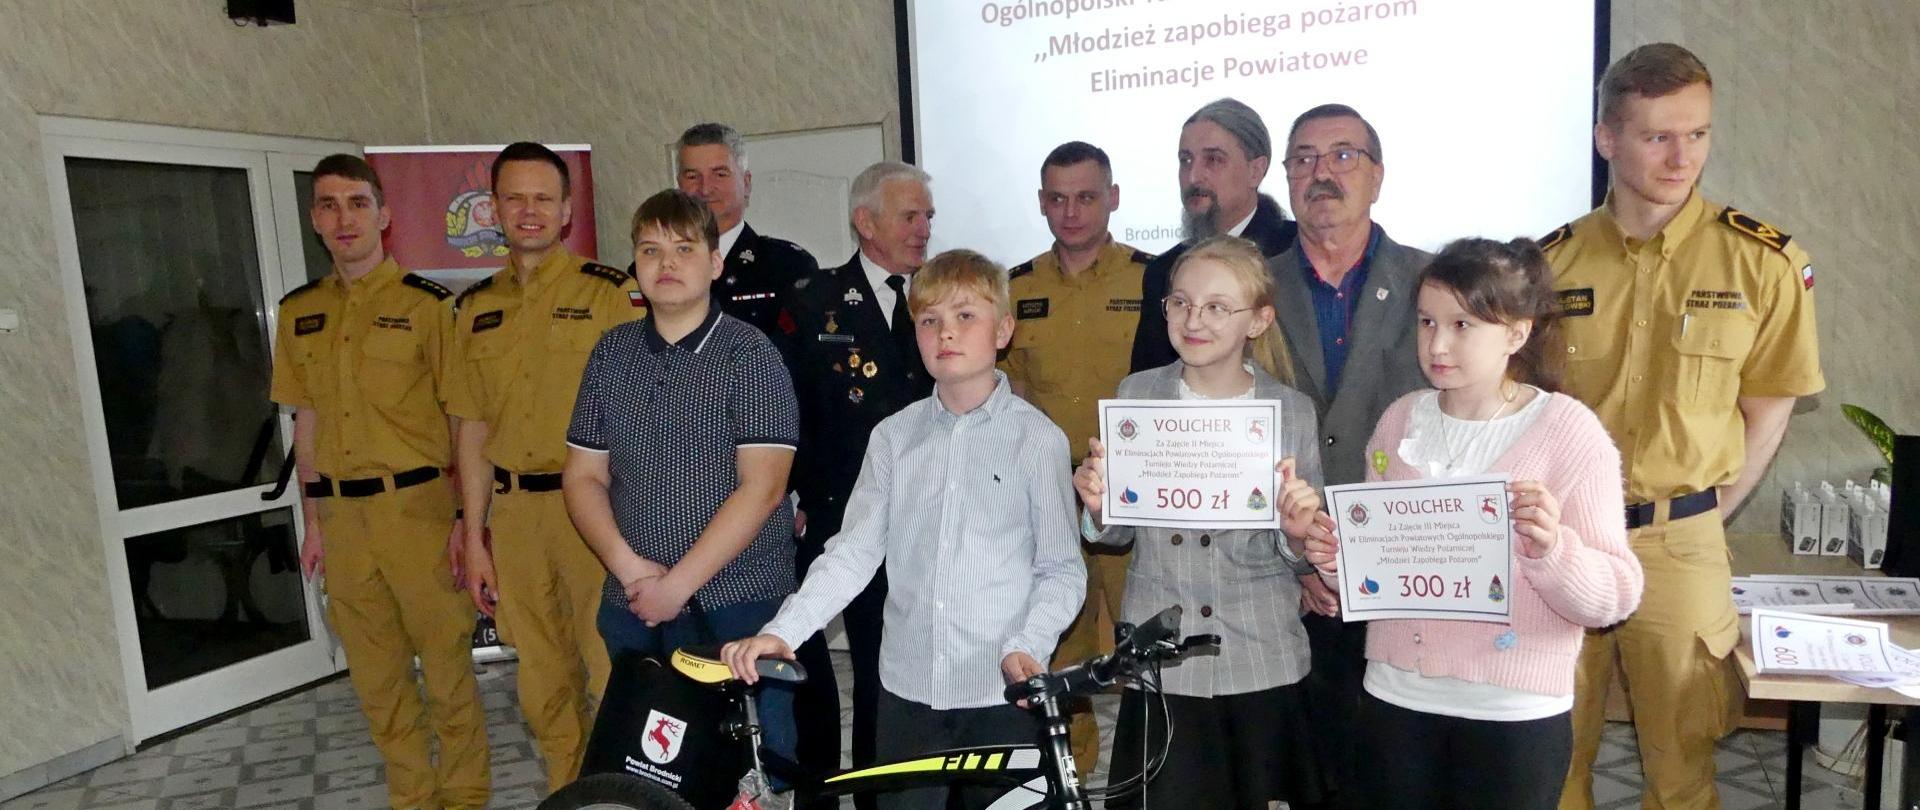 Zdjęcie przedstawia zwycięzców w najmłodszej grupie wiekowej eliminacji szczebla powiatowego Ogólnopolskiego Turnieju Wiedzy Pożarniczej „Młodzież zapobiega pożarom”. Za zwycięzcami przedstawiciele organizatorów. Zwycięski chłopiec przytrzymuje stojący przed nim rower – nagrodę główną.